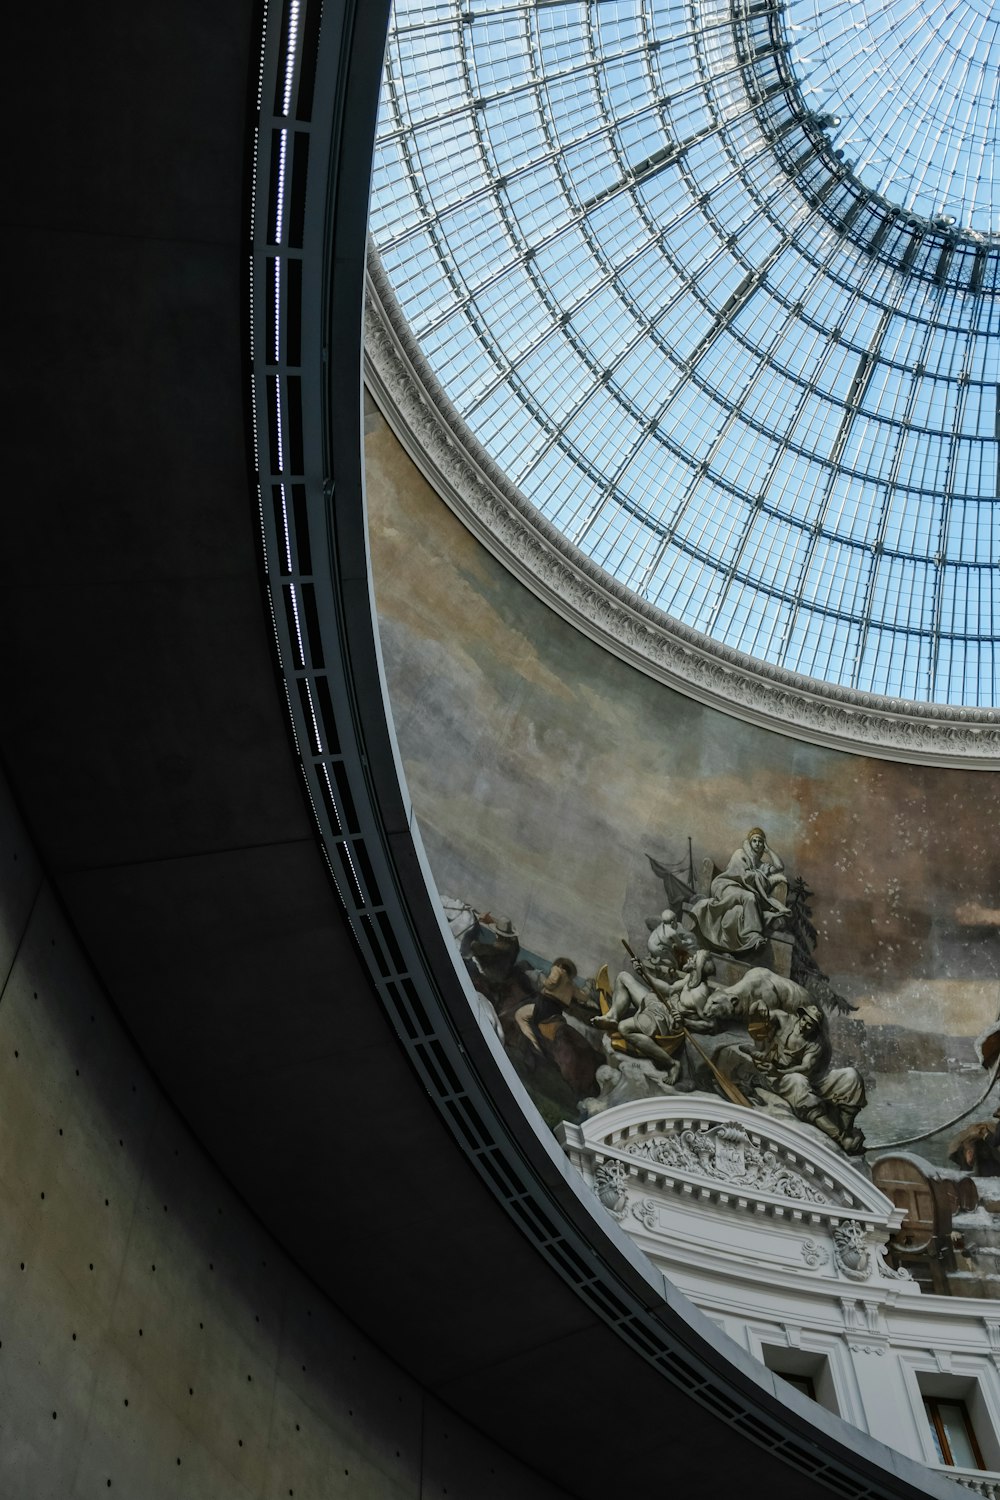 絵画が描かれたドーム型のガラス天井